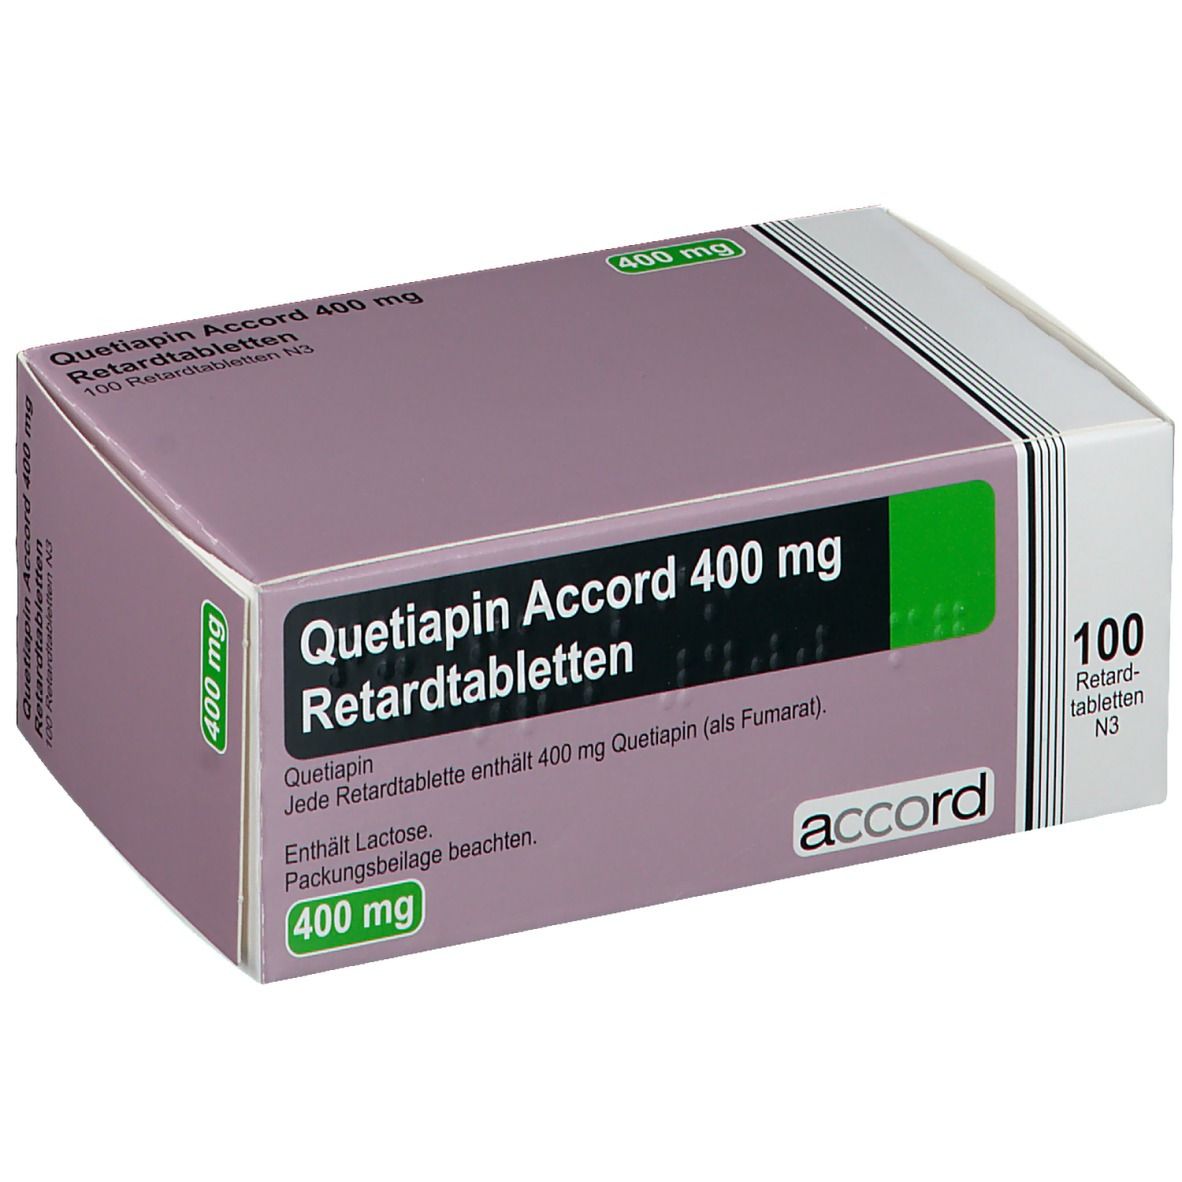 Quetiapin Accord 400Mg 